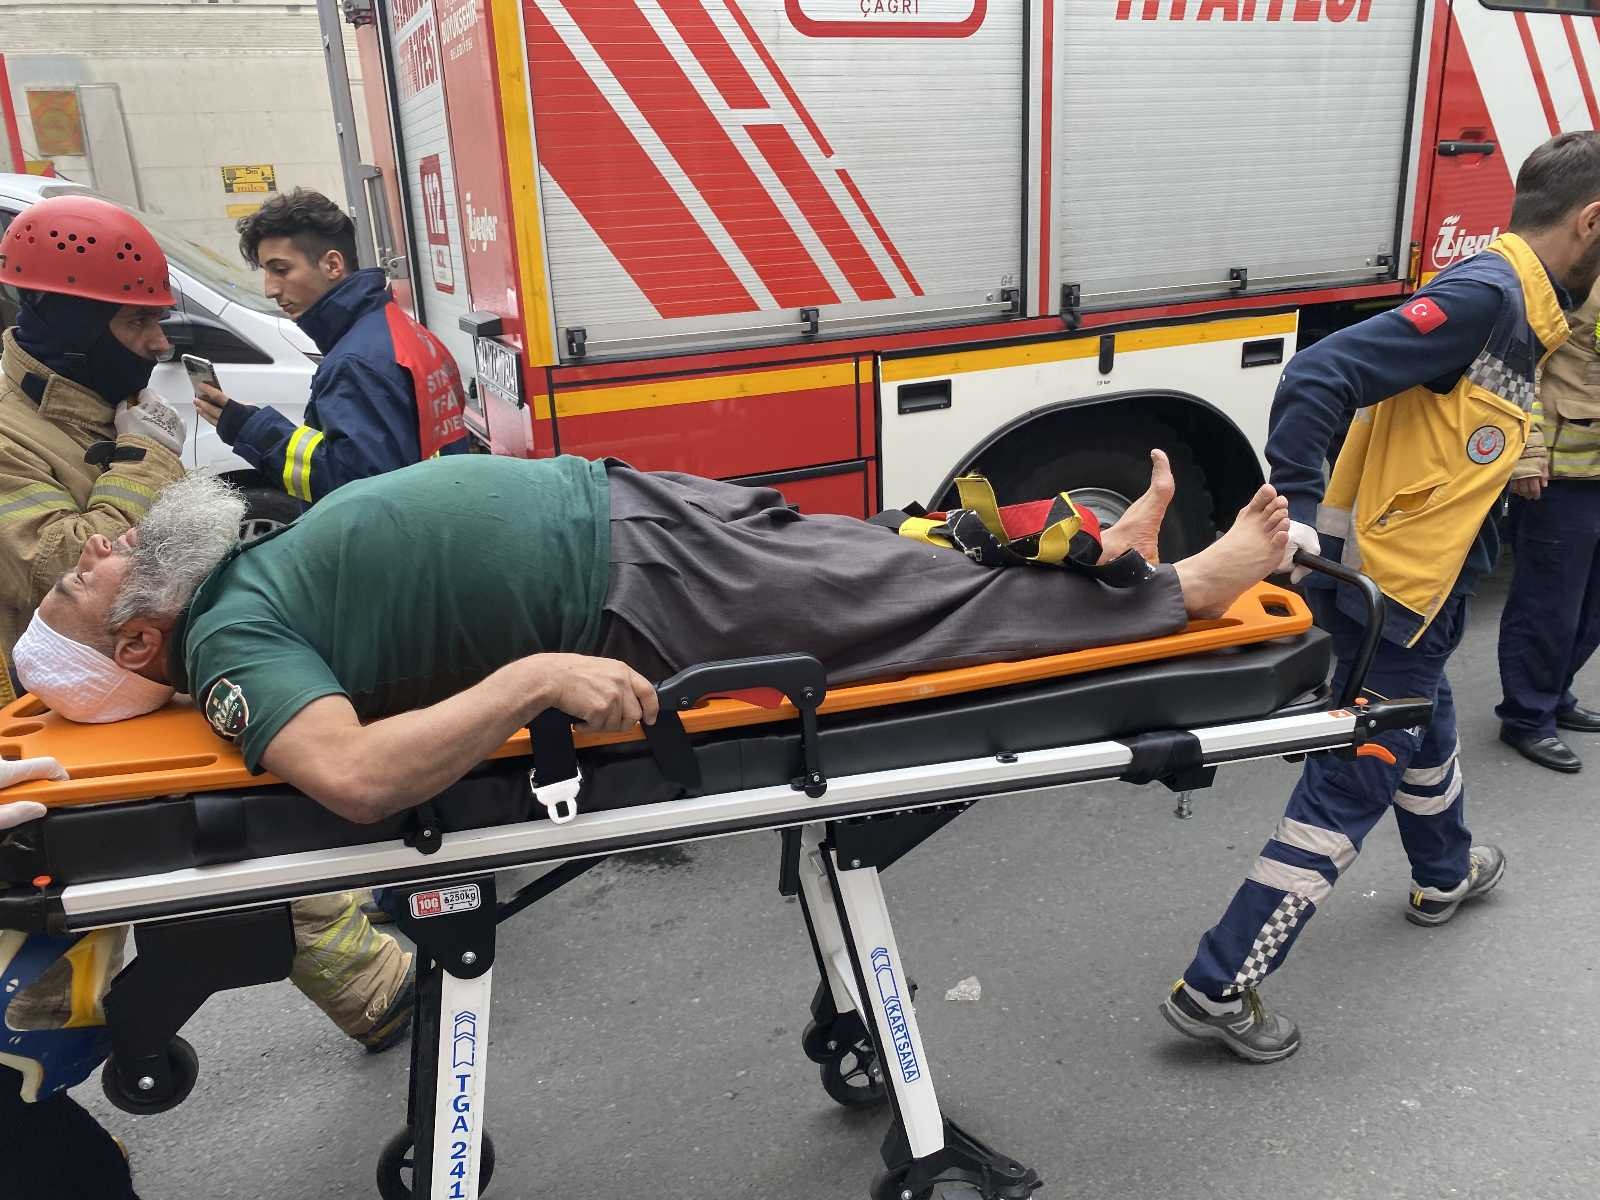 Bayrampaşa Kuru Gıda Hali’nde 2 aracın arasında sıkışan 1 kişi yaralandı #istanbul